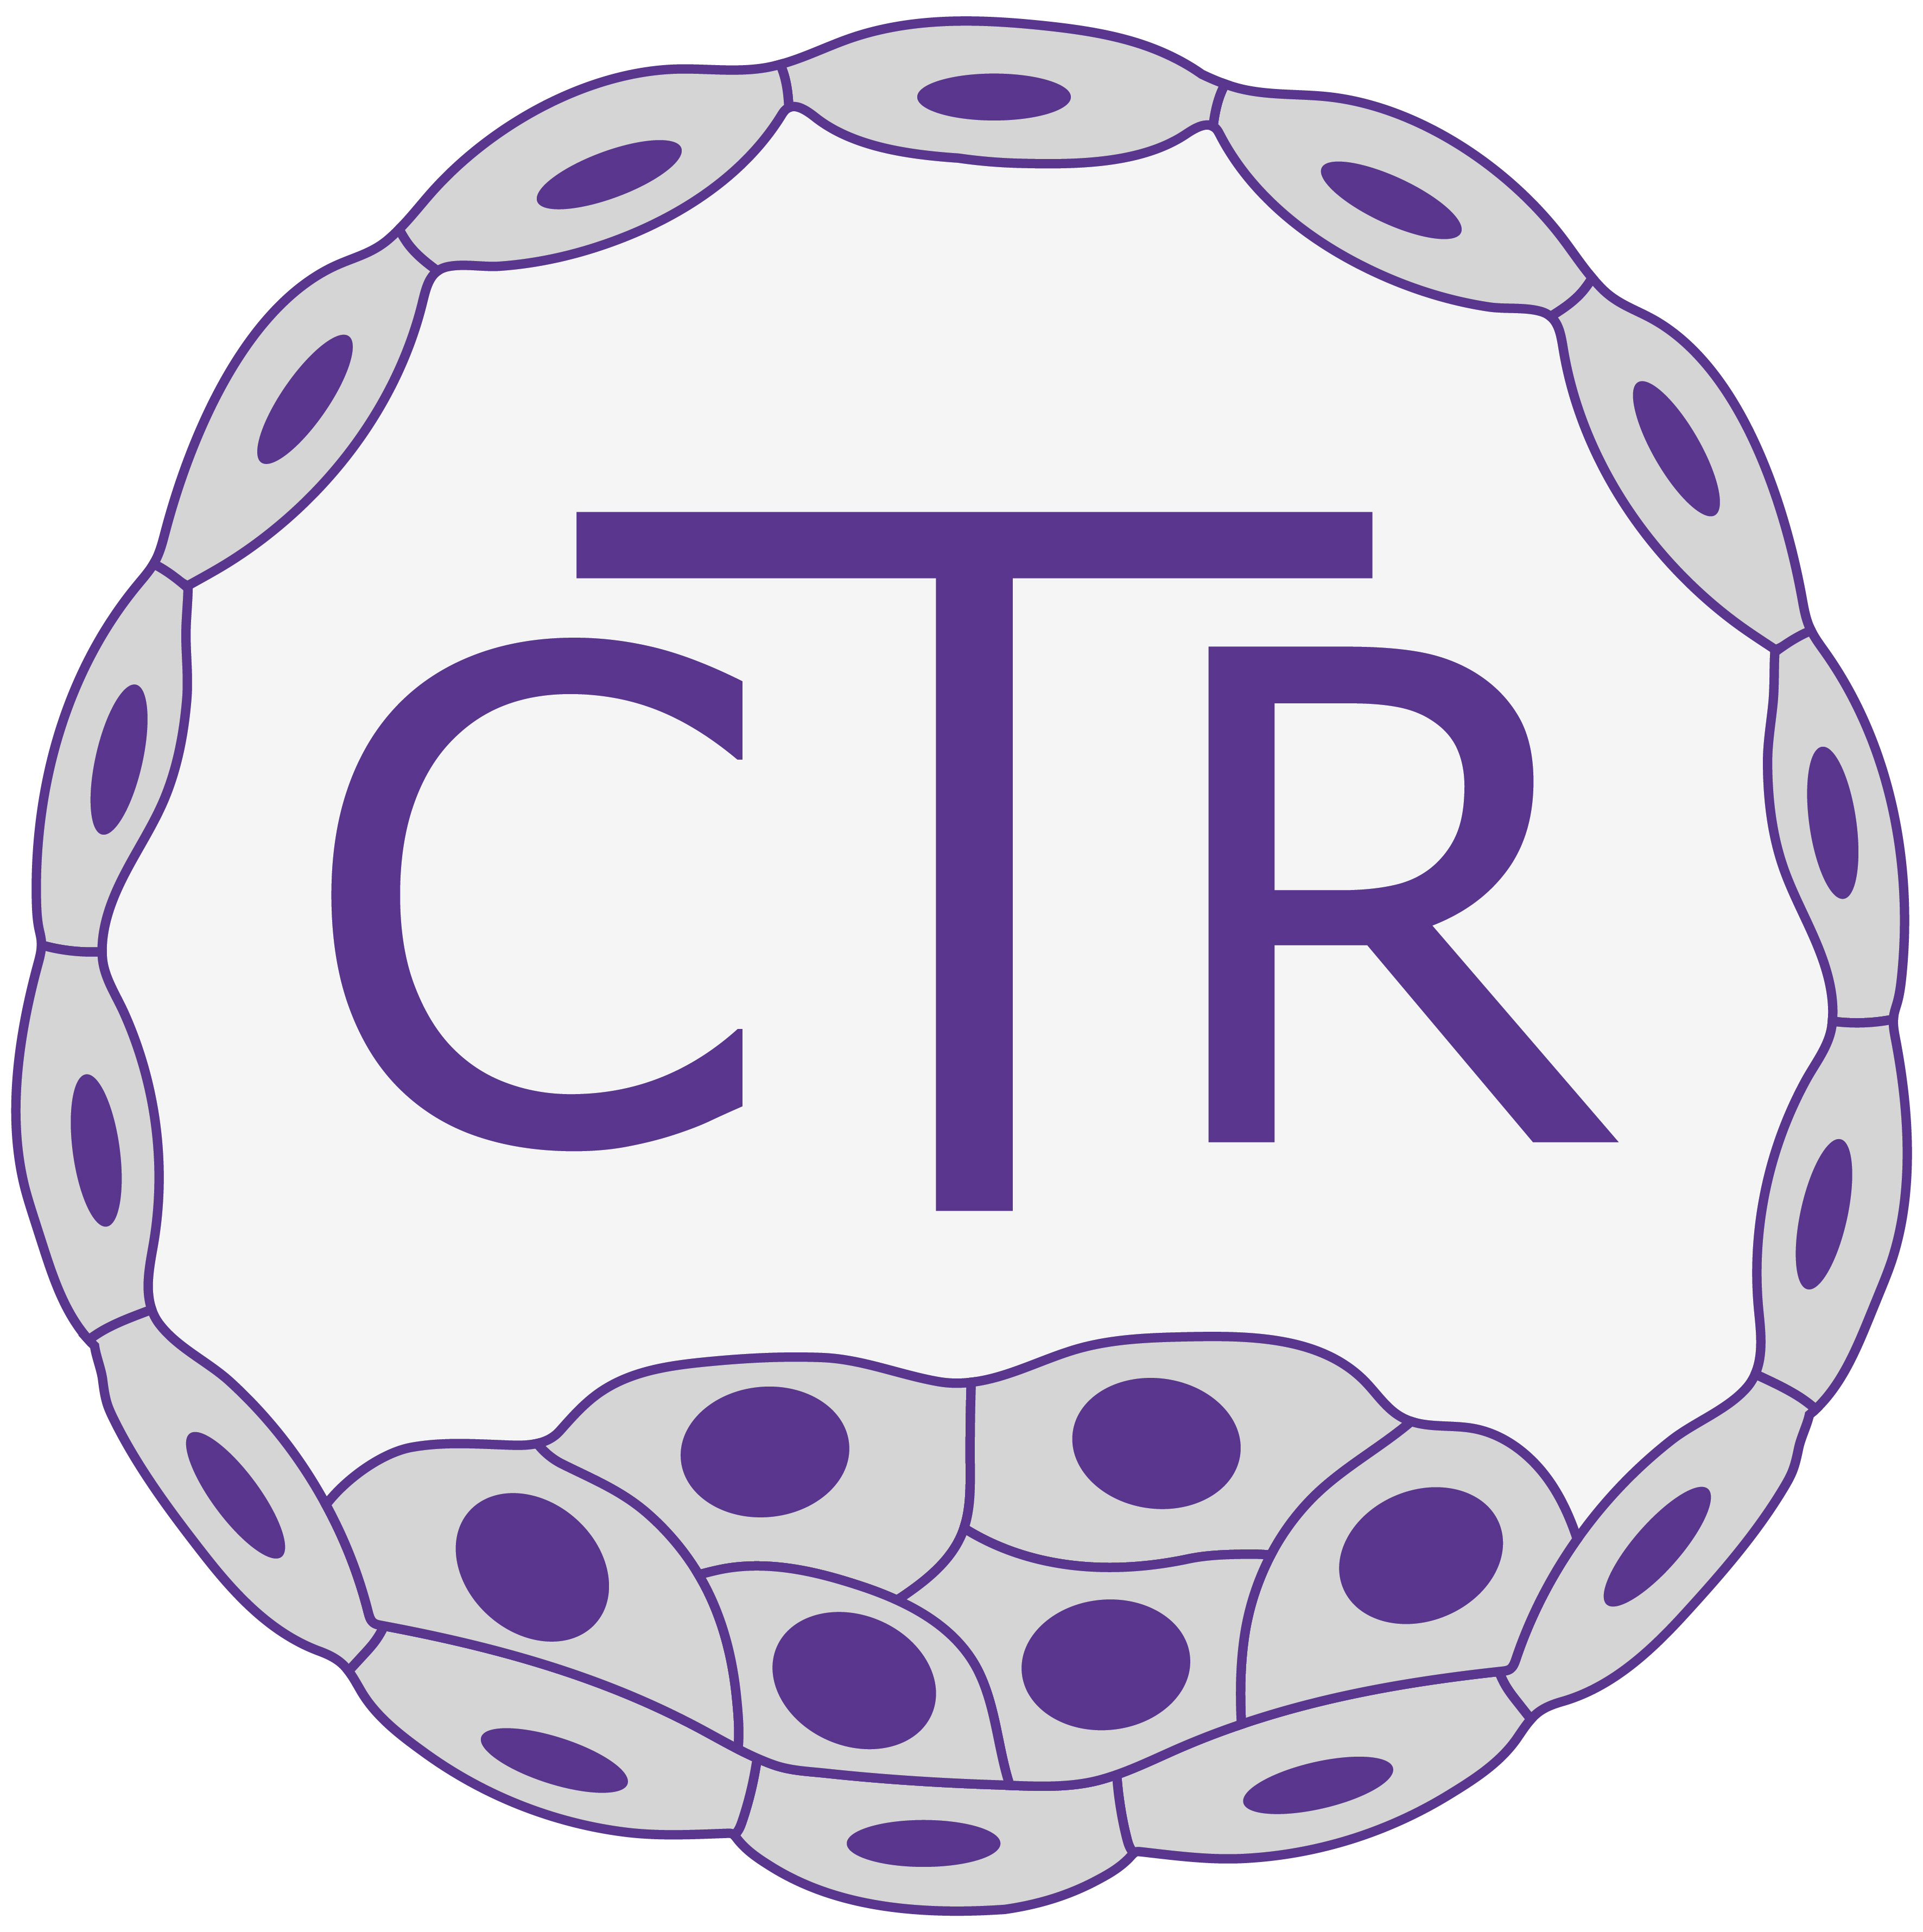 CTR Logo